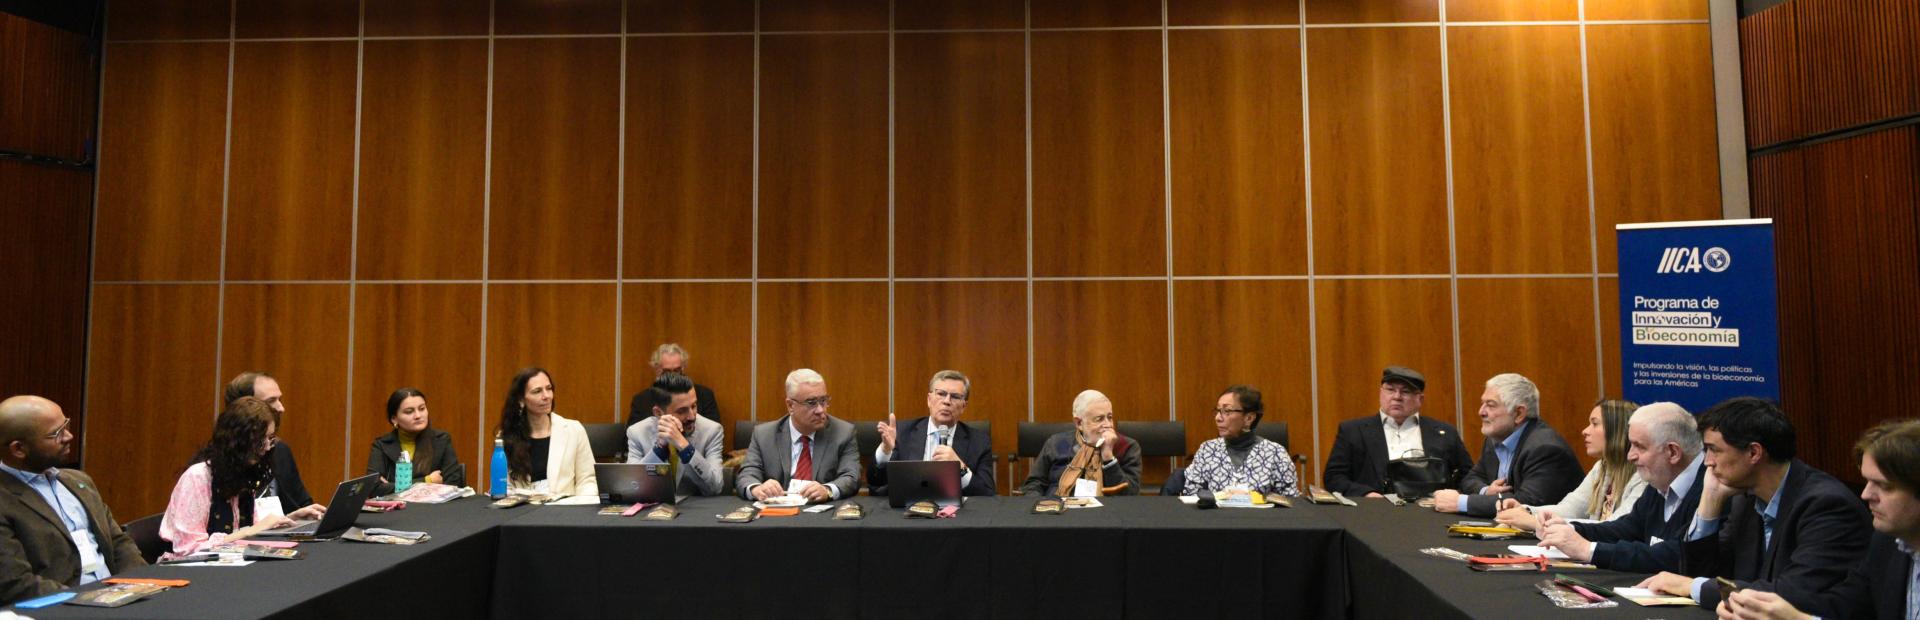 El IICA ejercerá la Secretaría Ejecutiva y Técnica de la Red Latinoamericana, por pedido unánime de las instituciones y organismos participantes del taller realizado en el marco del ICABR